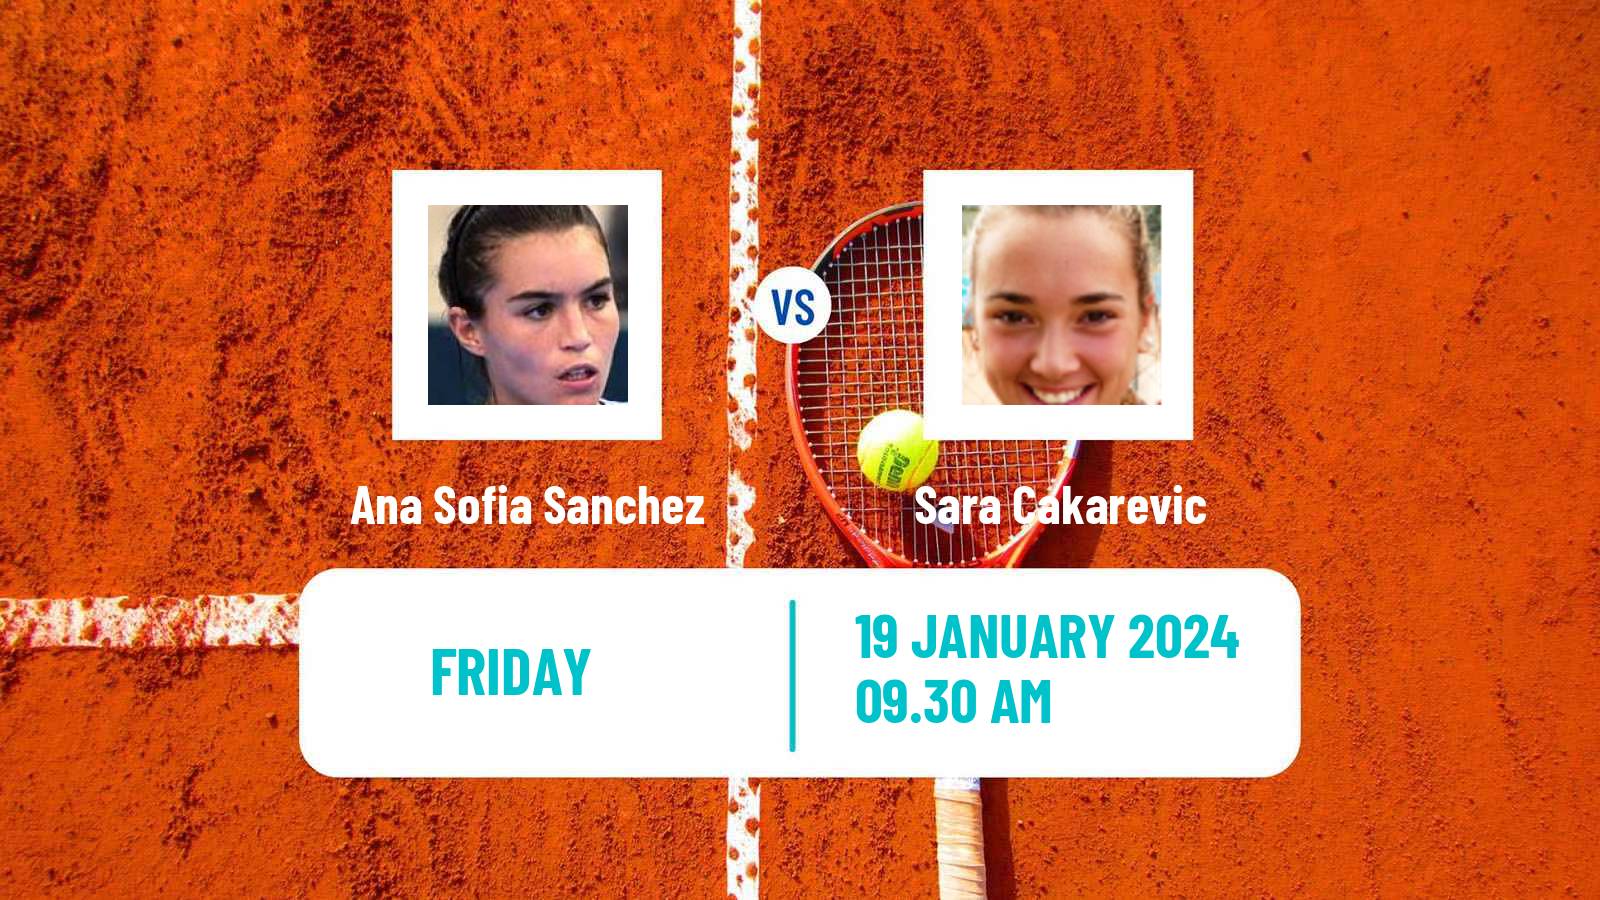 Tennis ITF W35 Buenos Aires Women Ana Sofia Sanchez - Sara Cakarevic